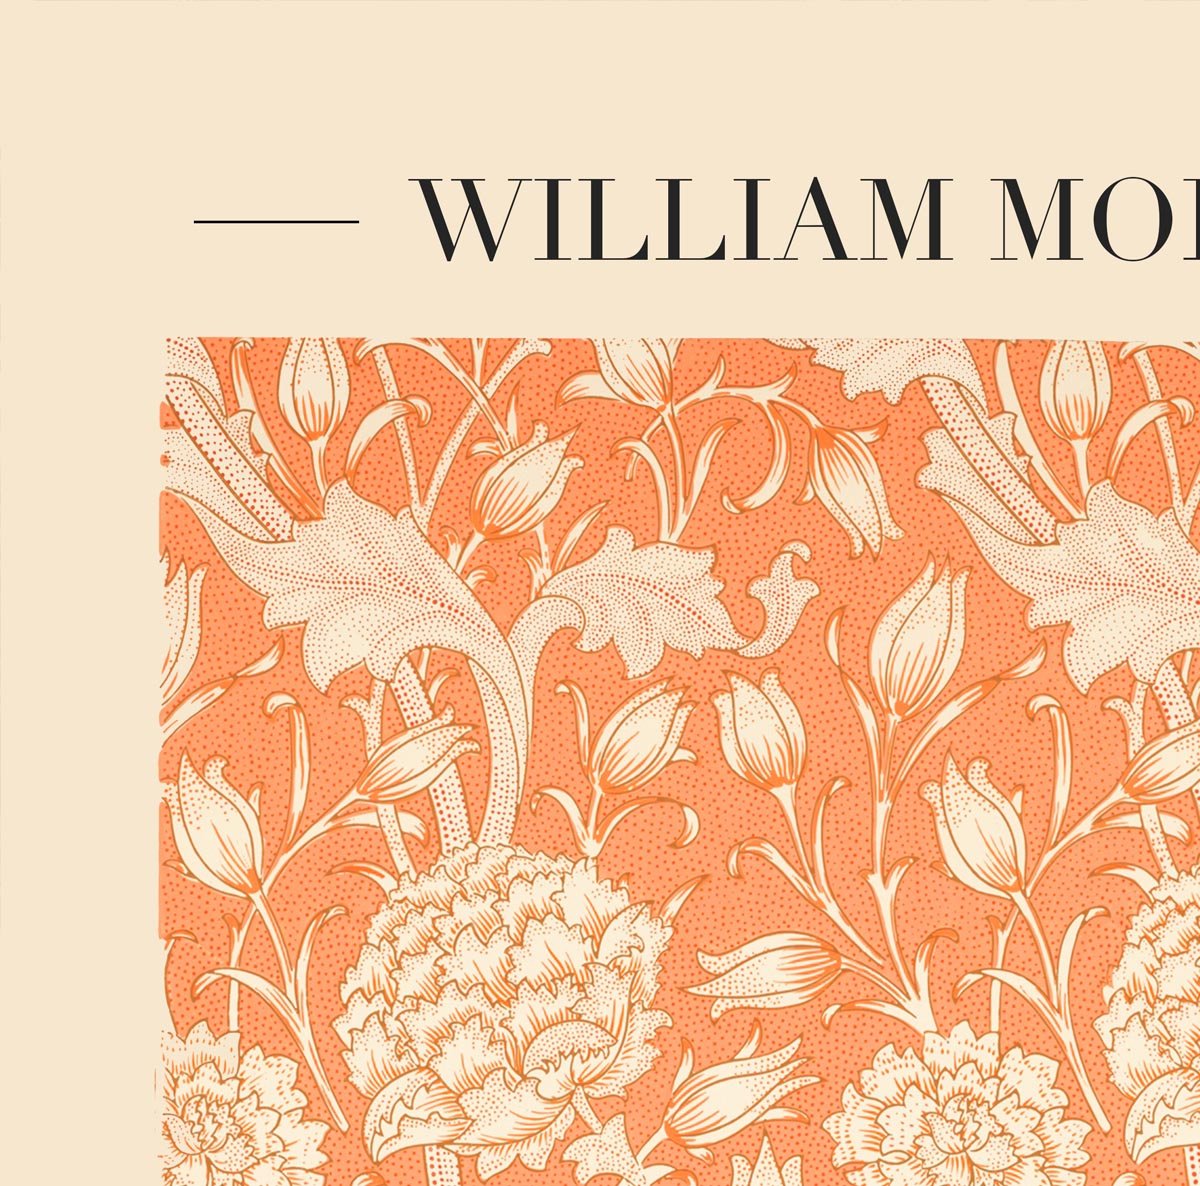 William Morris Wild Tulip Art Exhibition Poster